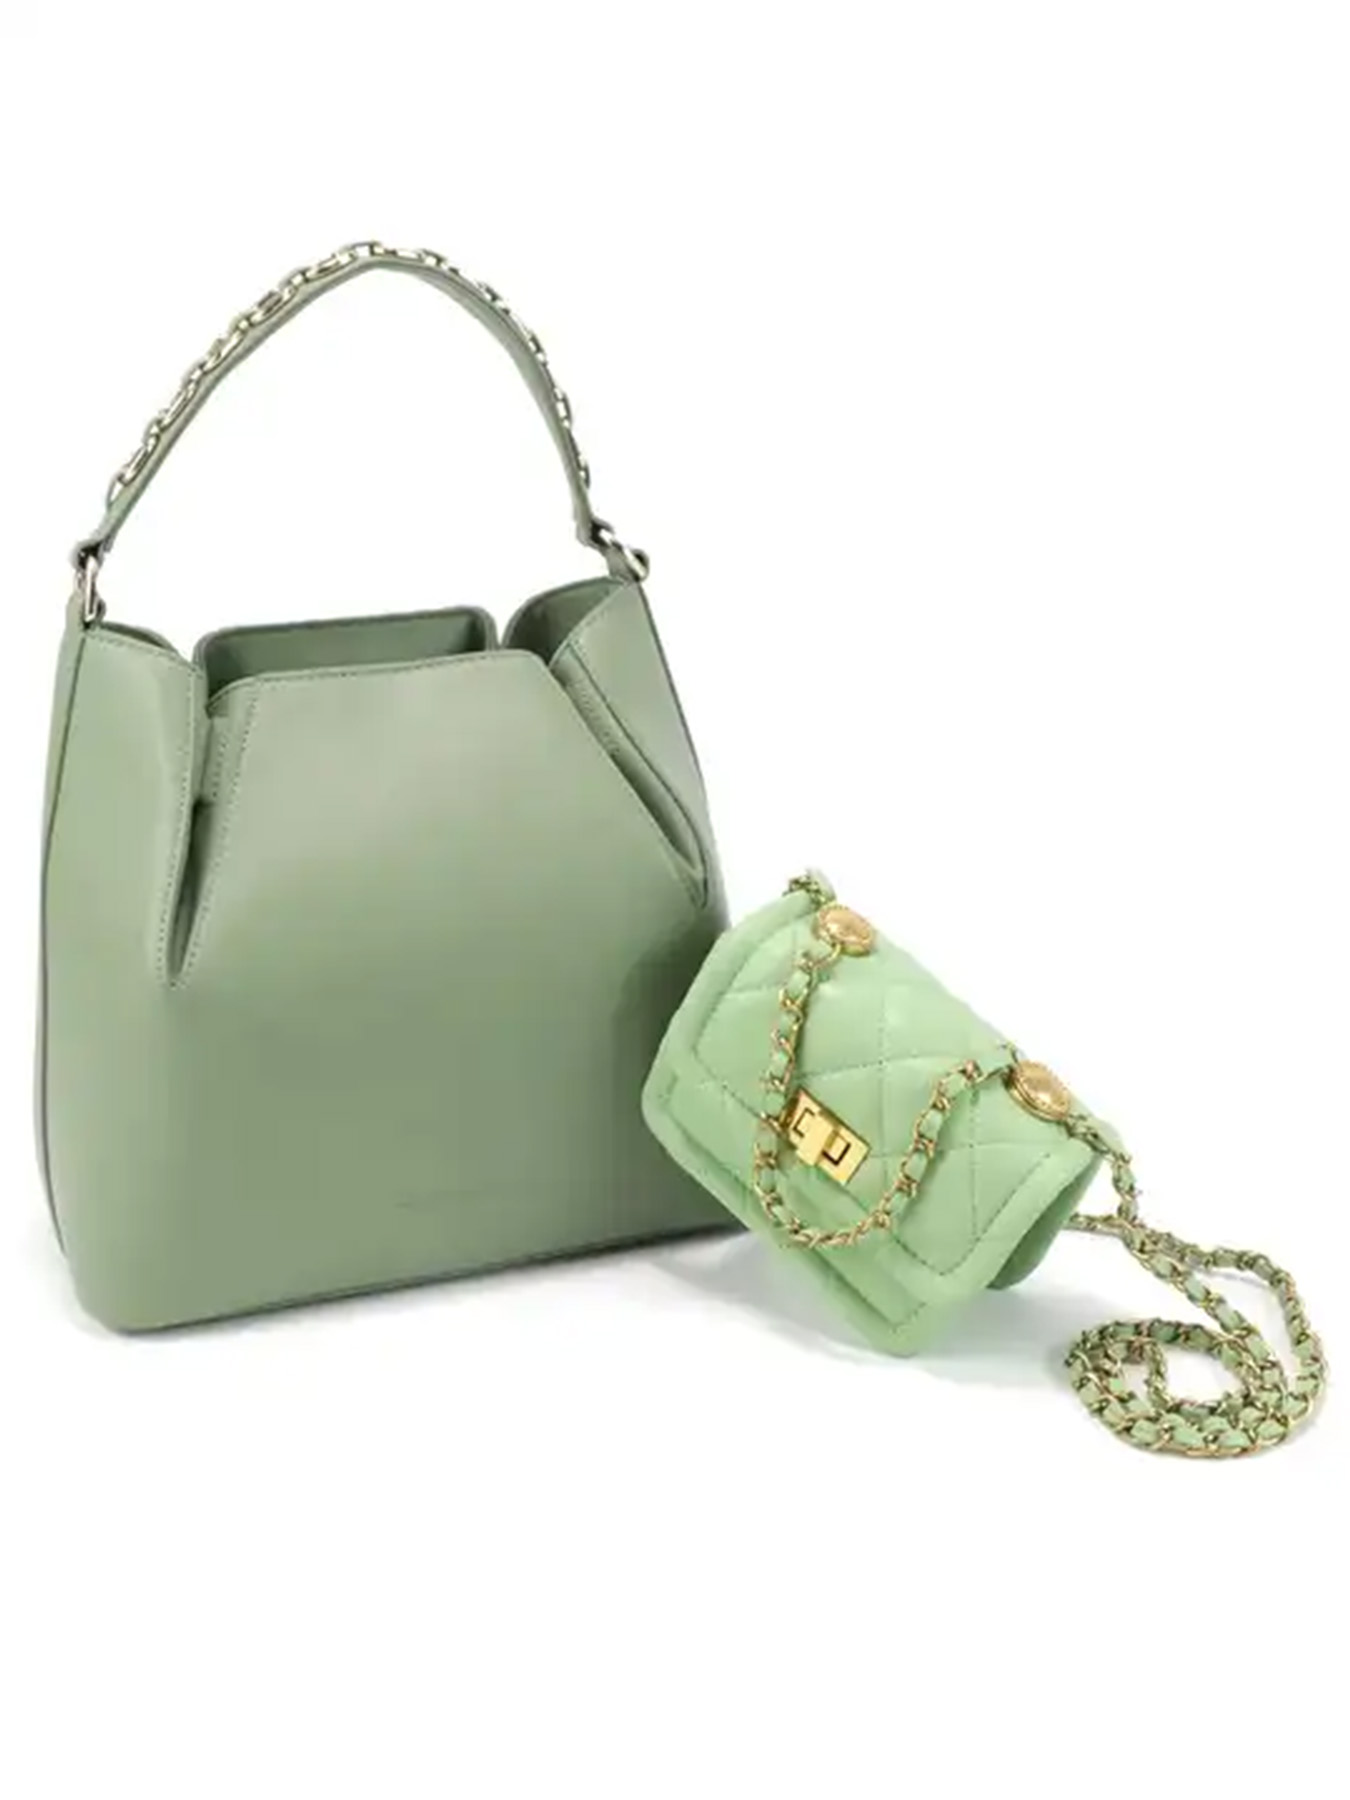 women's handbag tote bag